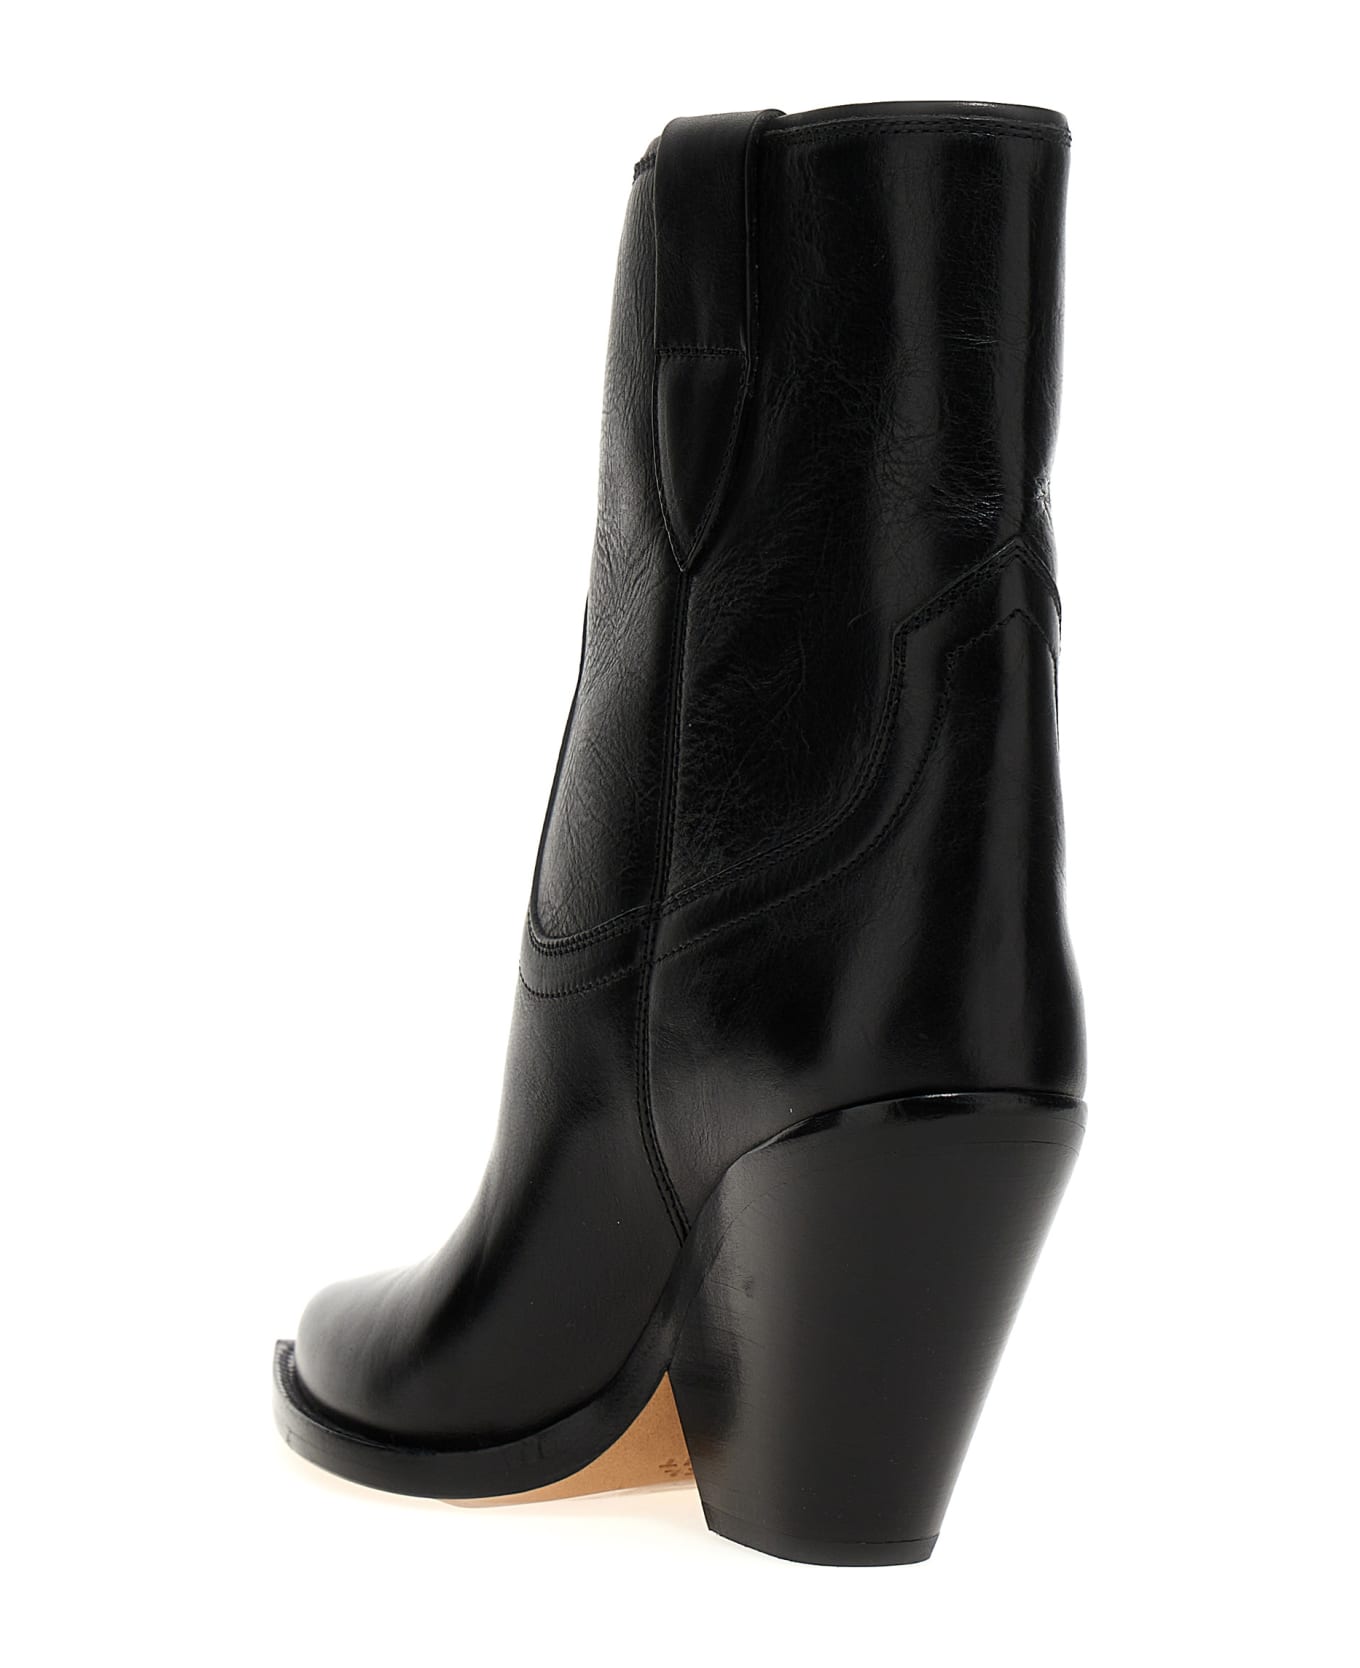 Isabel Marant Leyane Texan Ankle Boots - Black